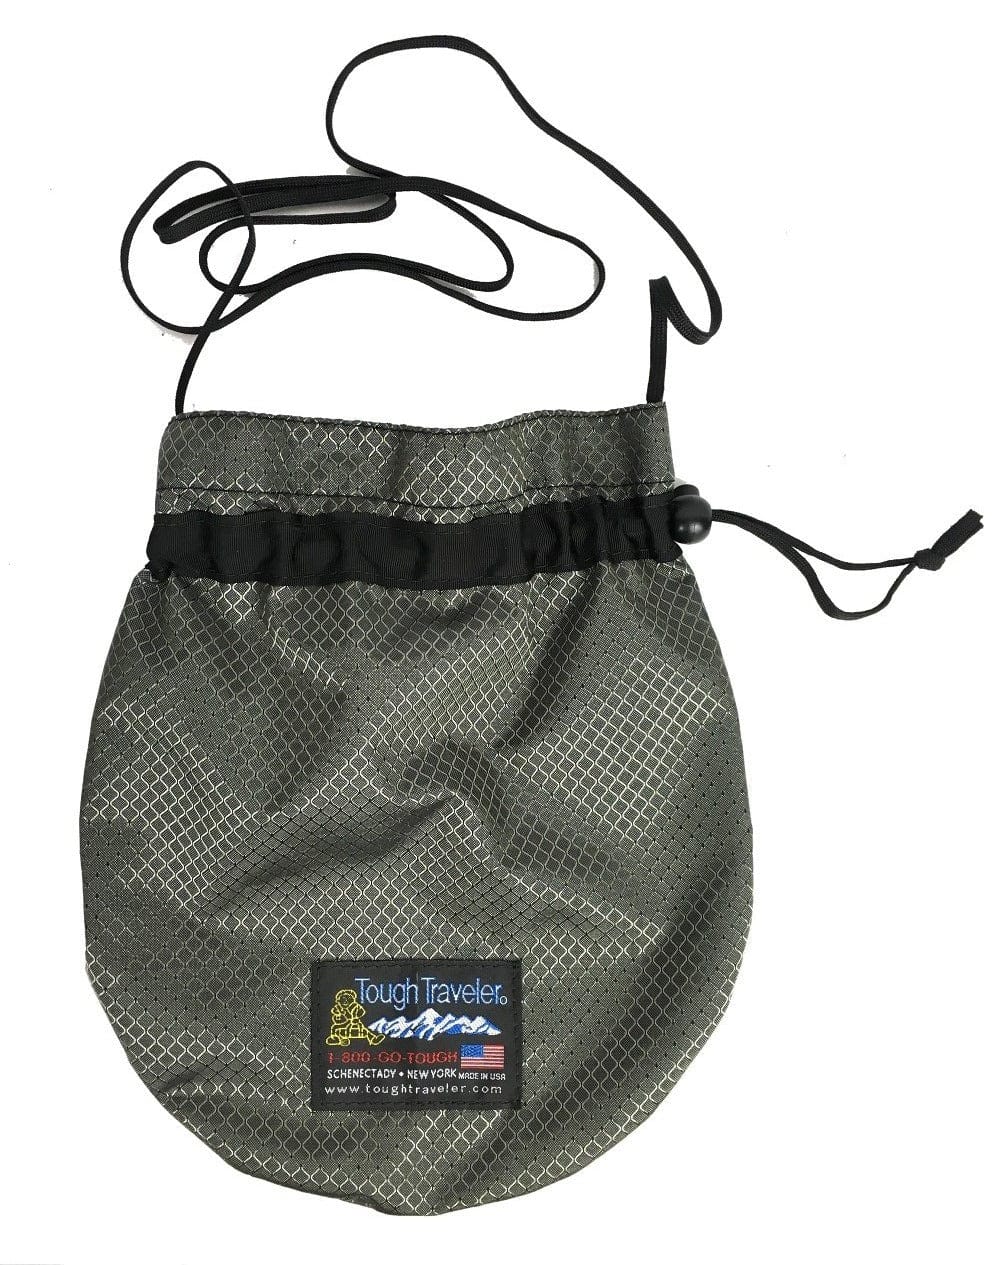 http://toughtraveler.com/cdn/shop/products/tough-traveler-luggage-drawstring-shoulder-bag-14797121585270.jpg?v=1680280391